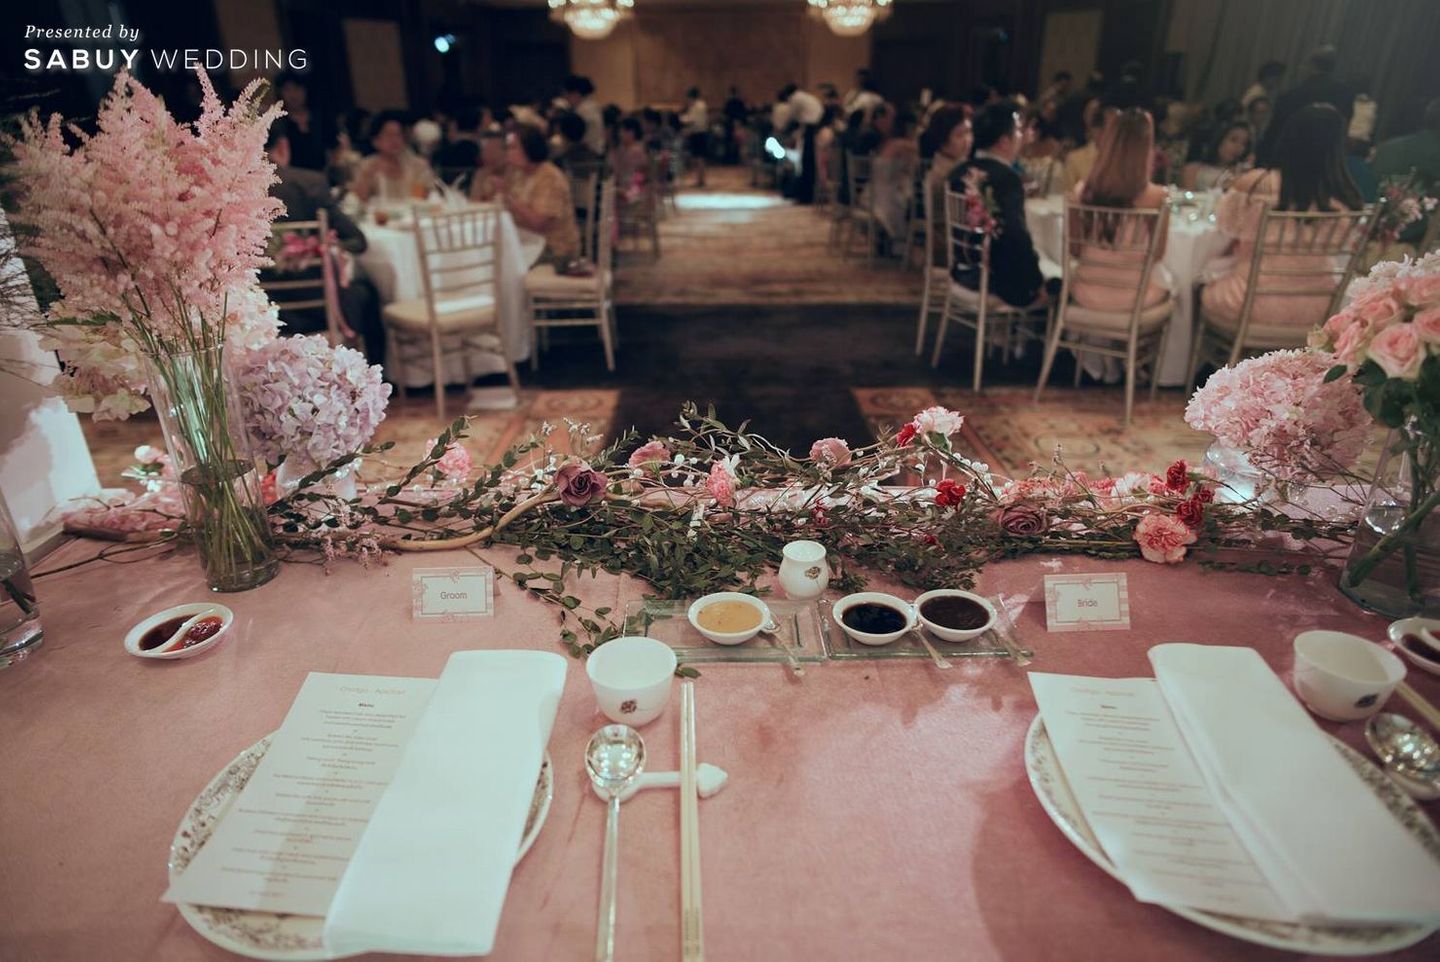 โต๊ะจีน,รับจัดเลี้ยง,สถานที่แต่งงาน,โรงแรม รีวิวงานแต่งแซ่บบาดใจ สไตล์เจ้าสาวแฟชั่นนิสต้า @The Peninsula Bangkok